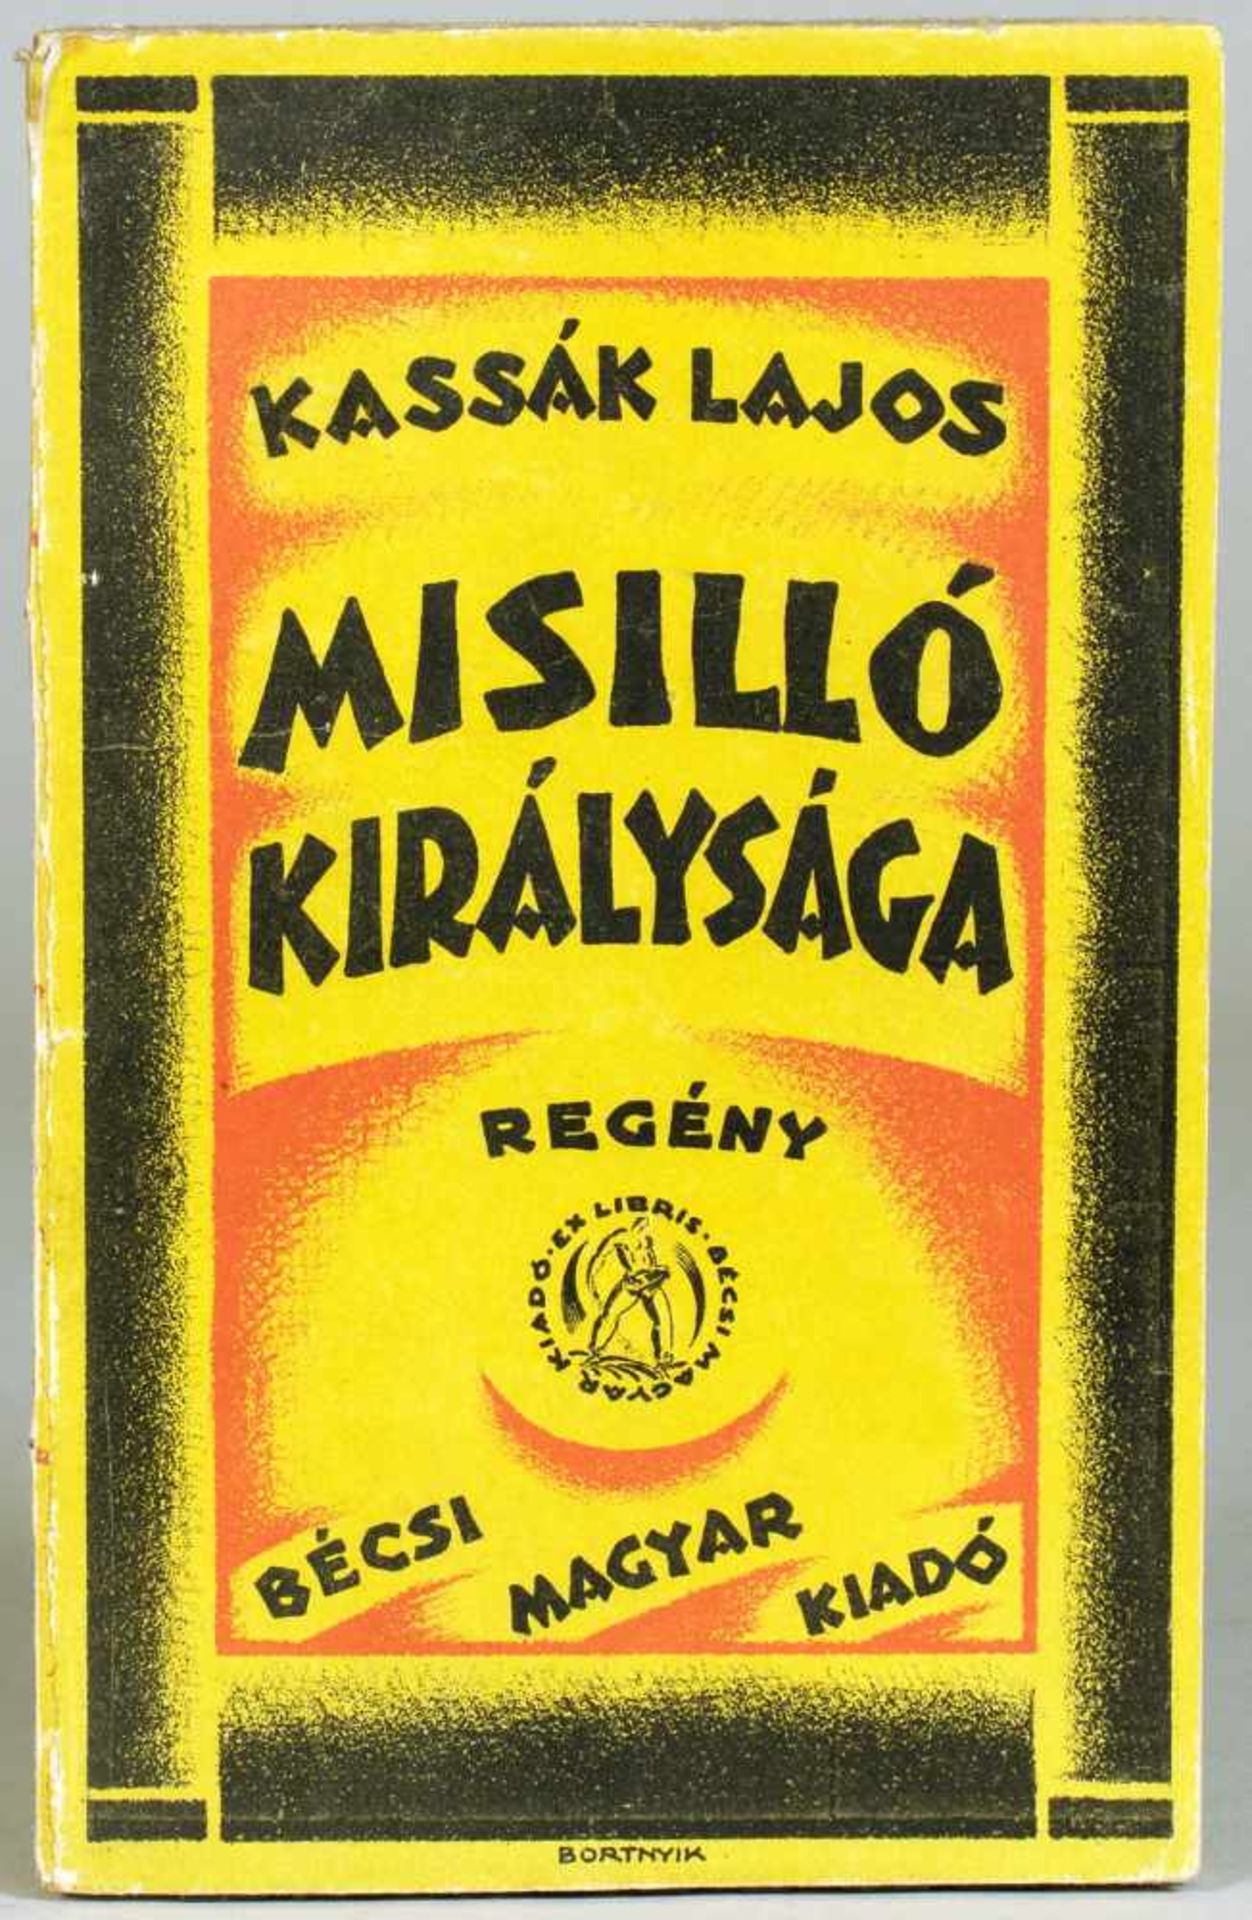 Lajos Kassak. Misilló királysága. Regény. Második kiadás. (ungarisch: Das Königreich Misillo. Roman.